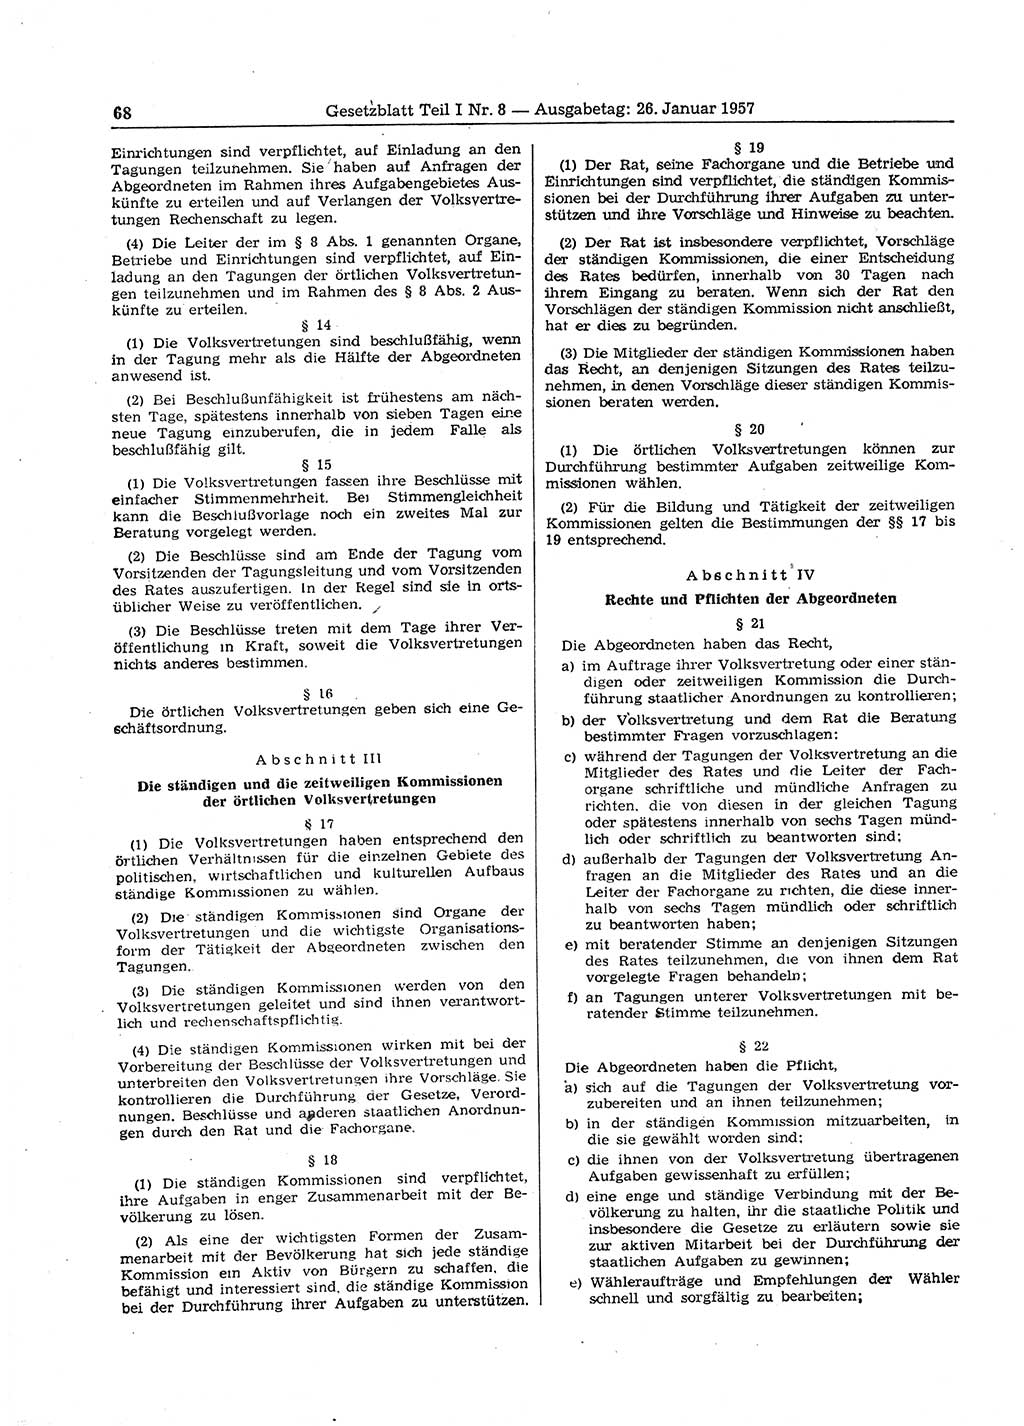 Gesetzblatt (GBl.) der Deutschen Demokratischen Republik (DDR) Teil Ⅰ 1957, Seite 68 (GBl. DDR Ⅰ 1957, S. 68)